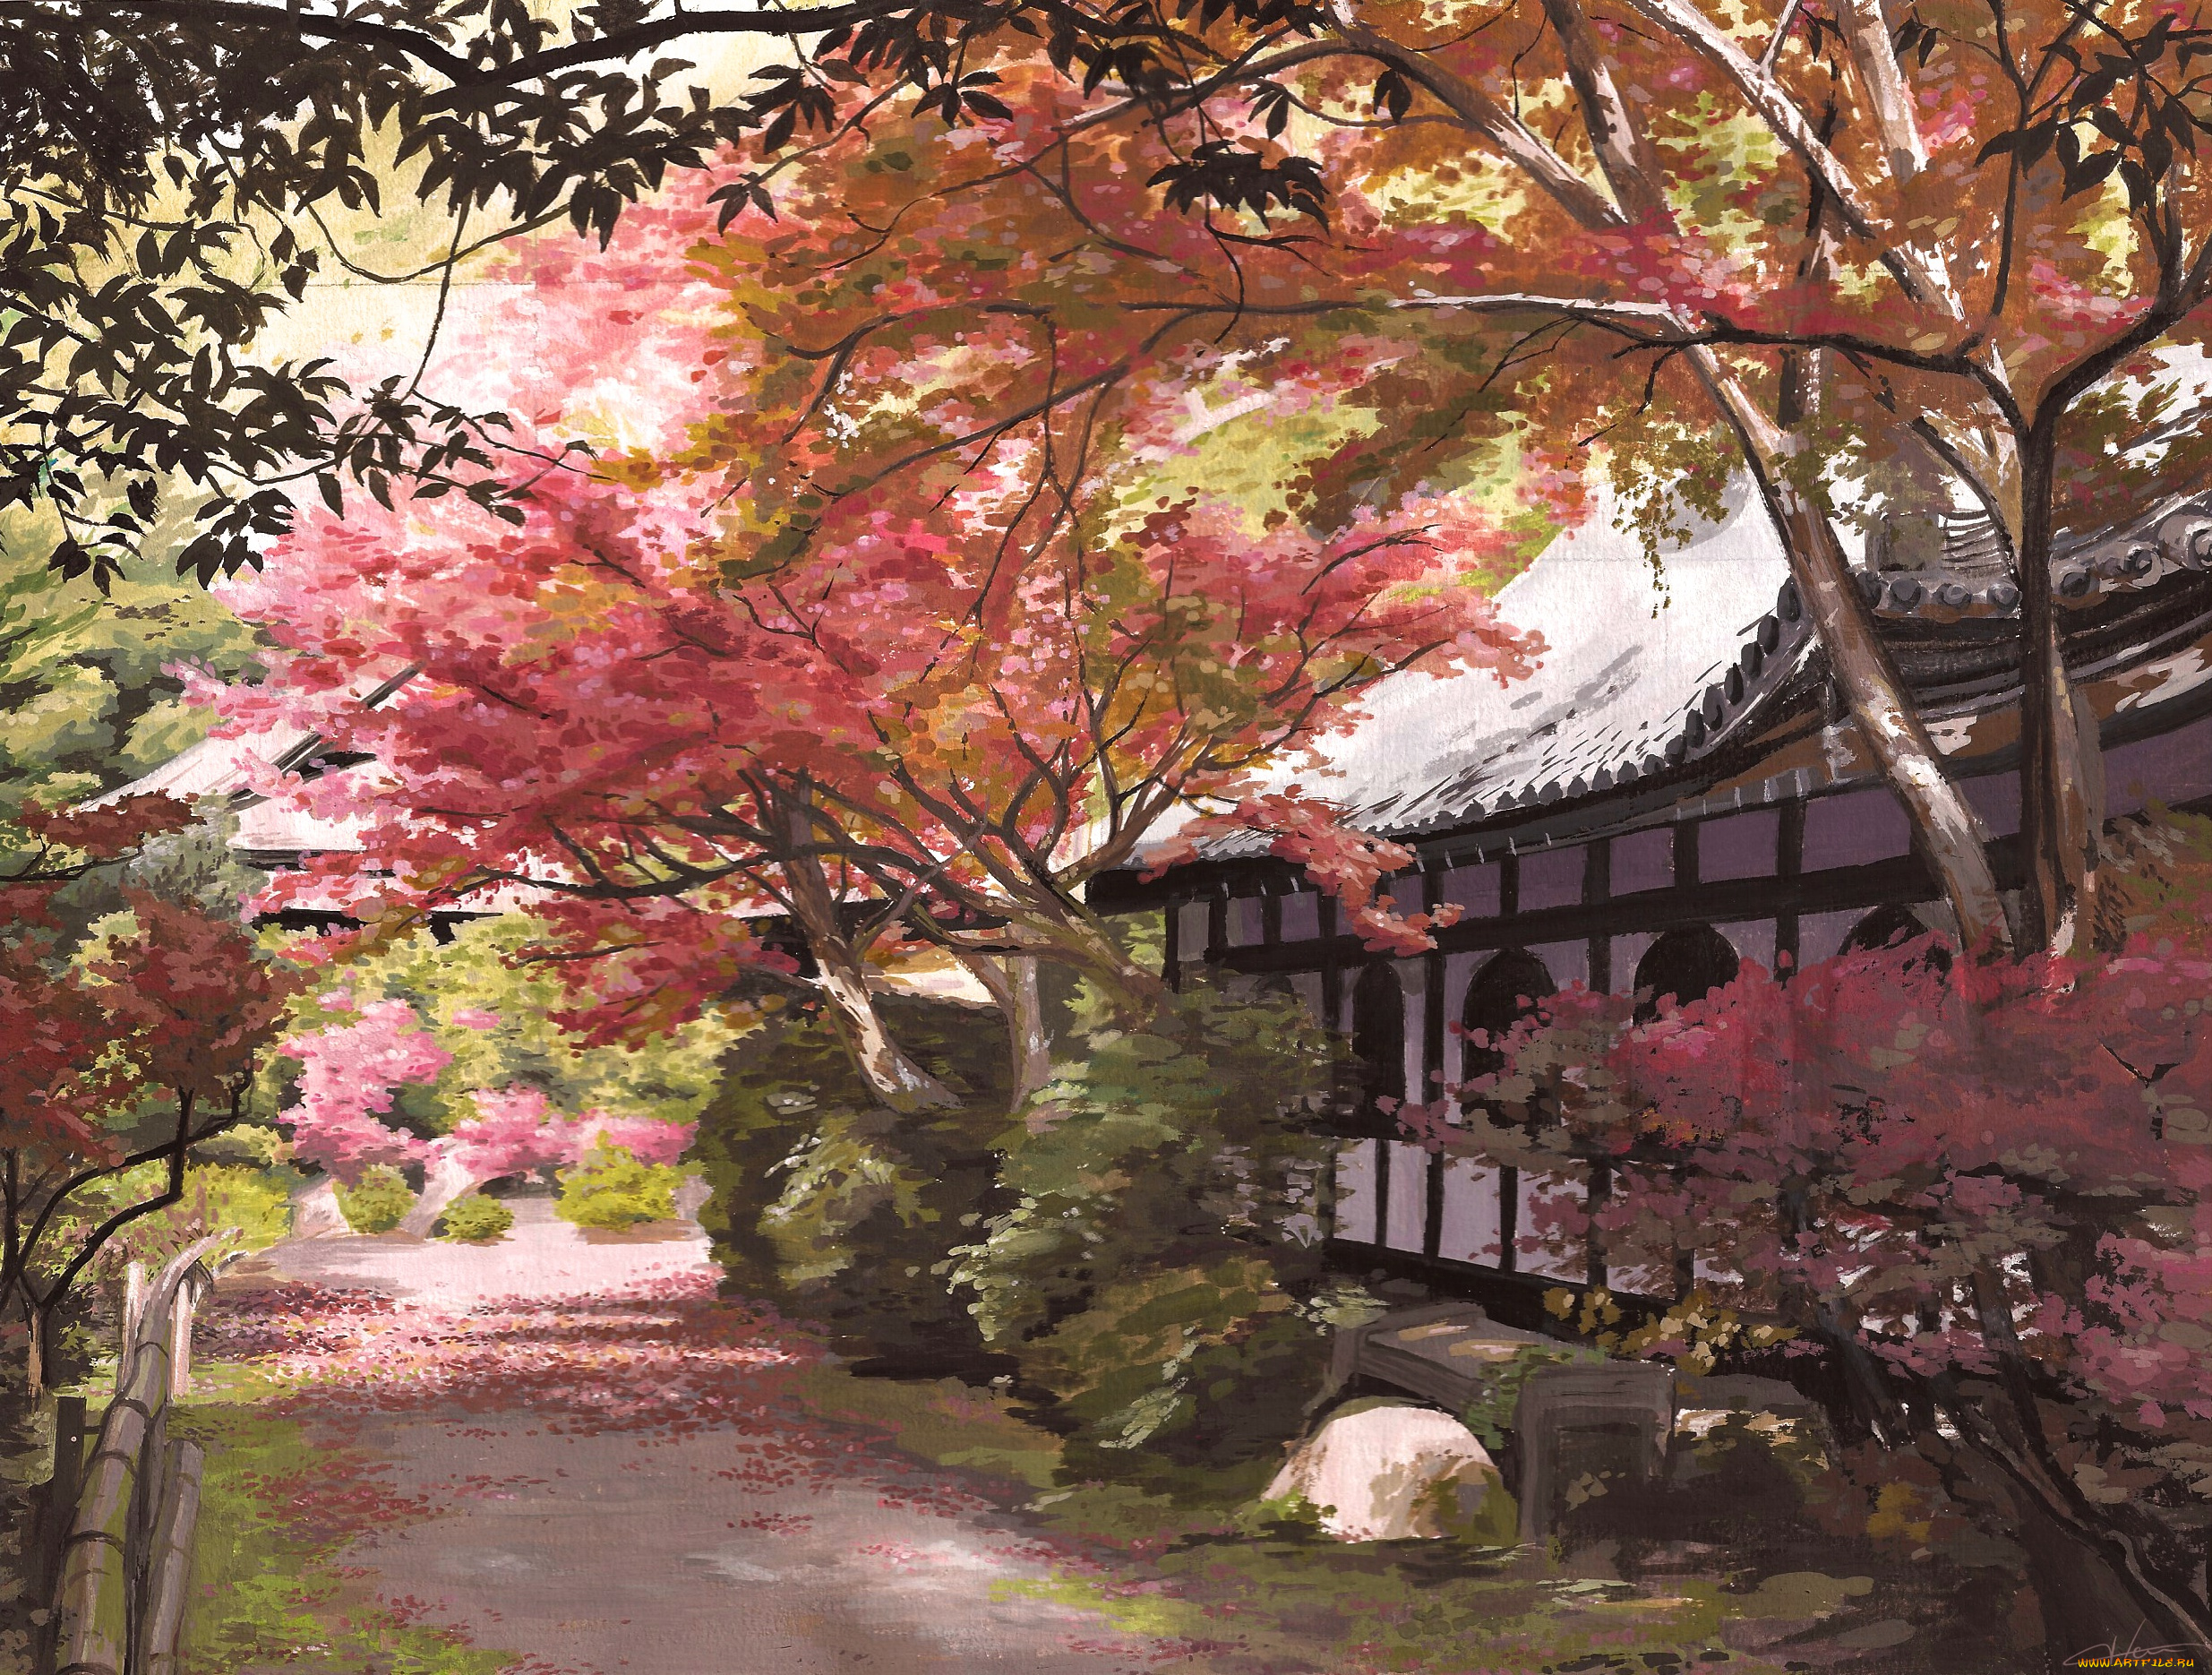 рисованное, живопись, тень, дворик, скамейка, деревья, кусты, Япония, art, selven7, забор, дом, дорожка, листопад, осень